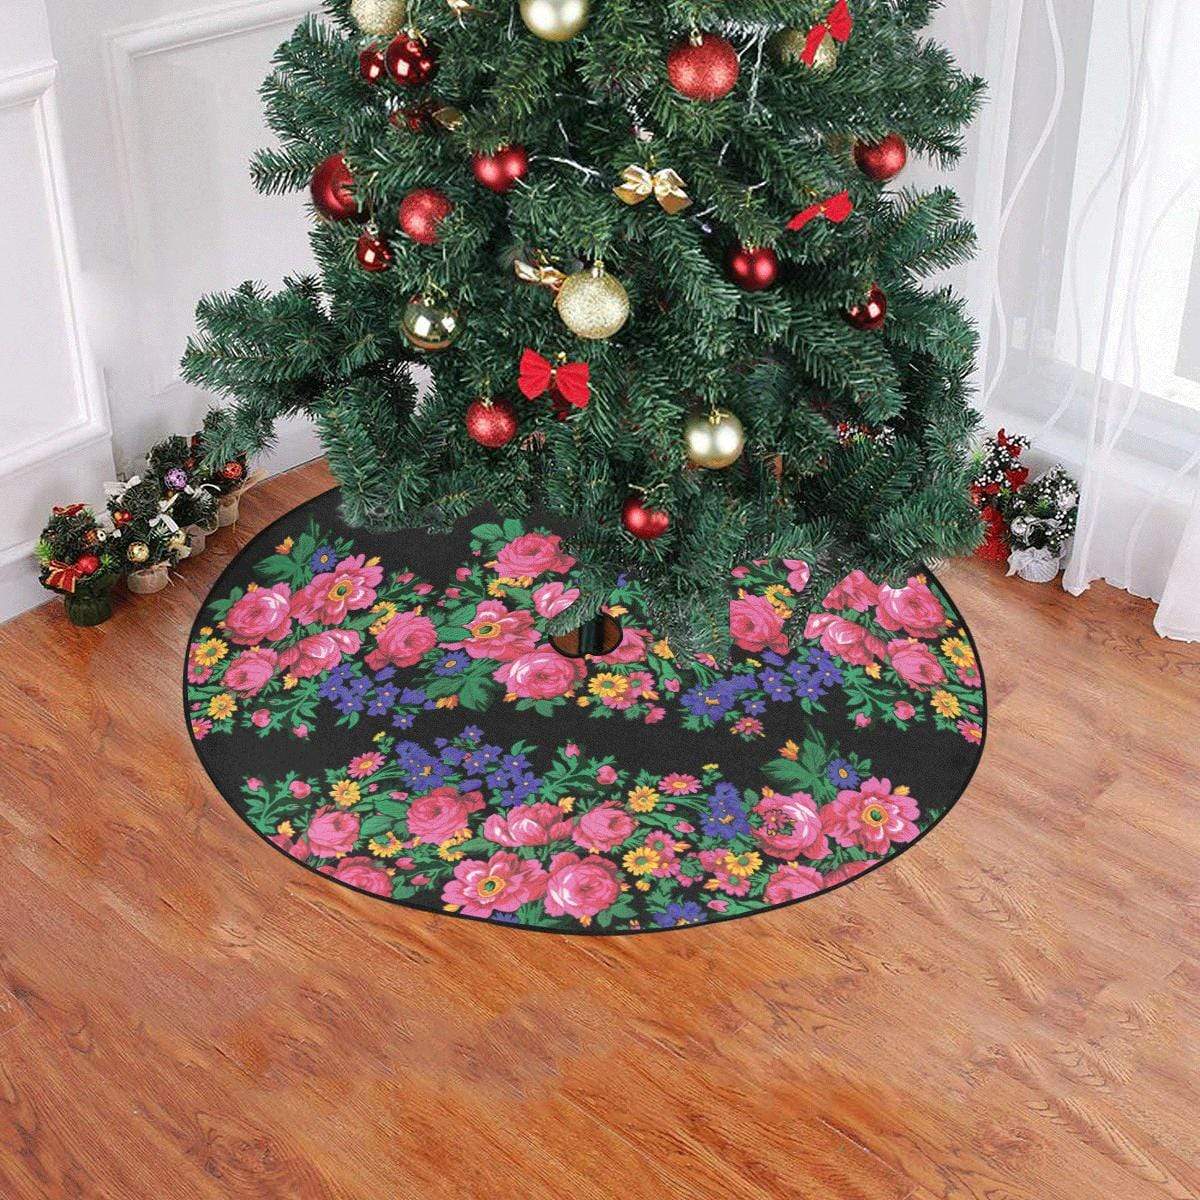 Kokum's Revenge-Black Christmas Tree Skirt 47" x 47" Christmas Tree Skirt e-joyer 